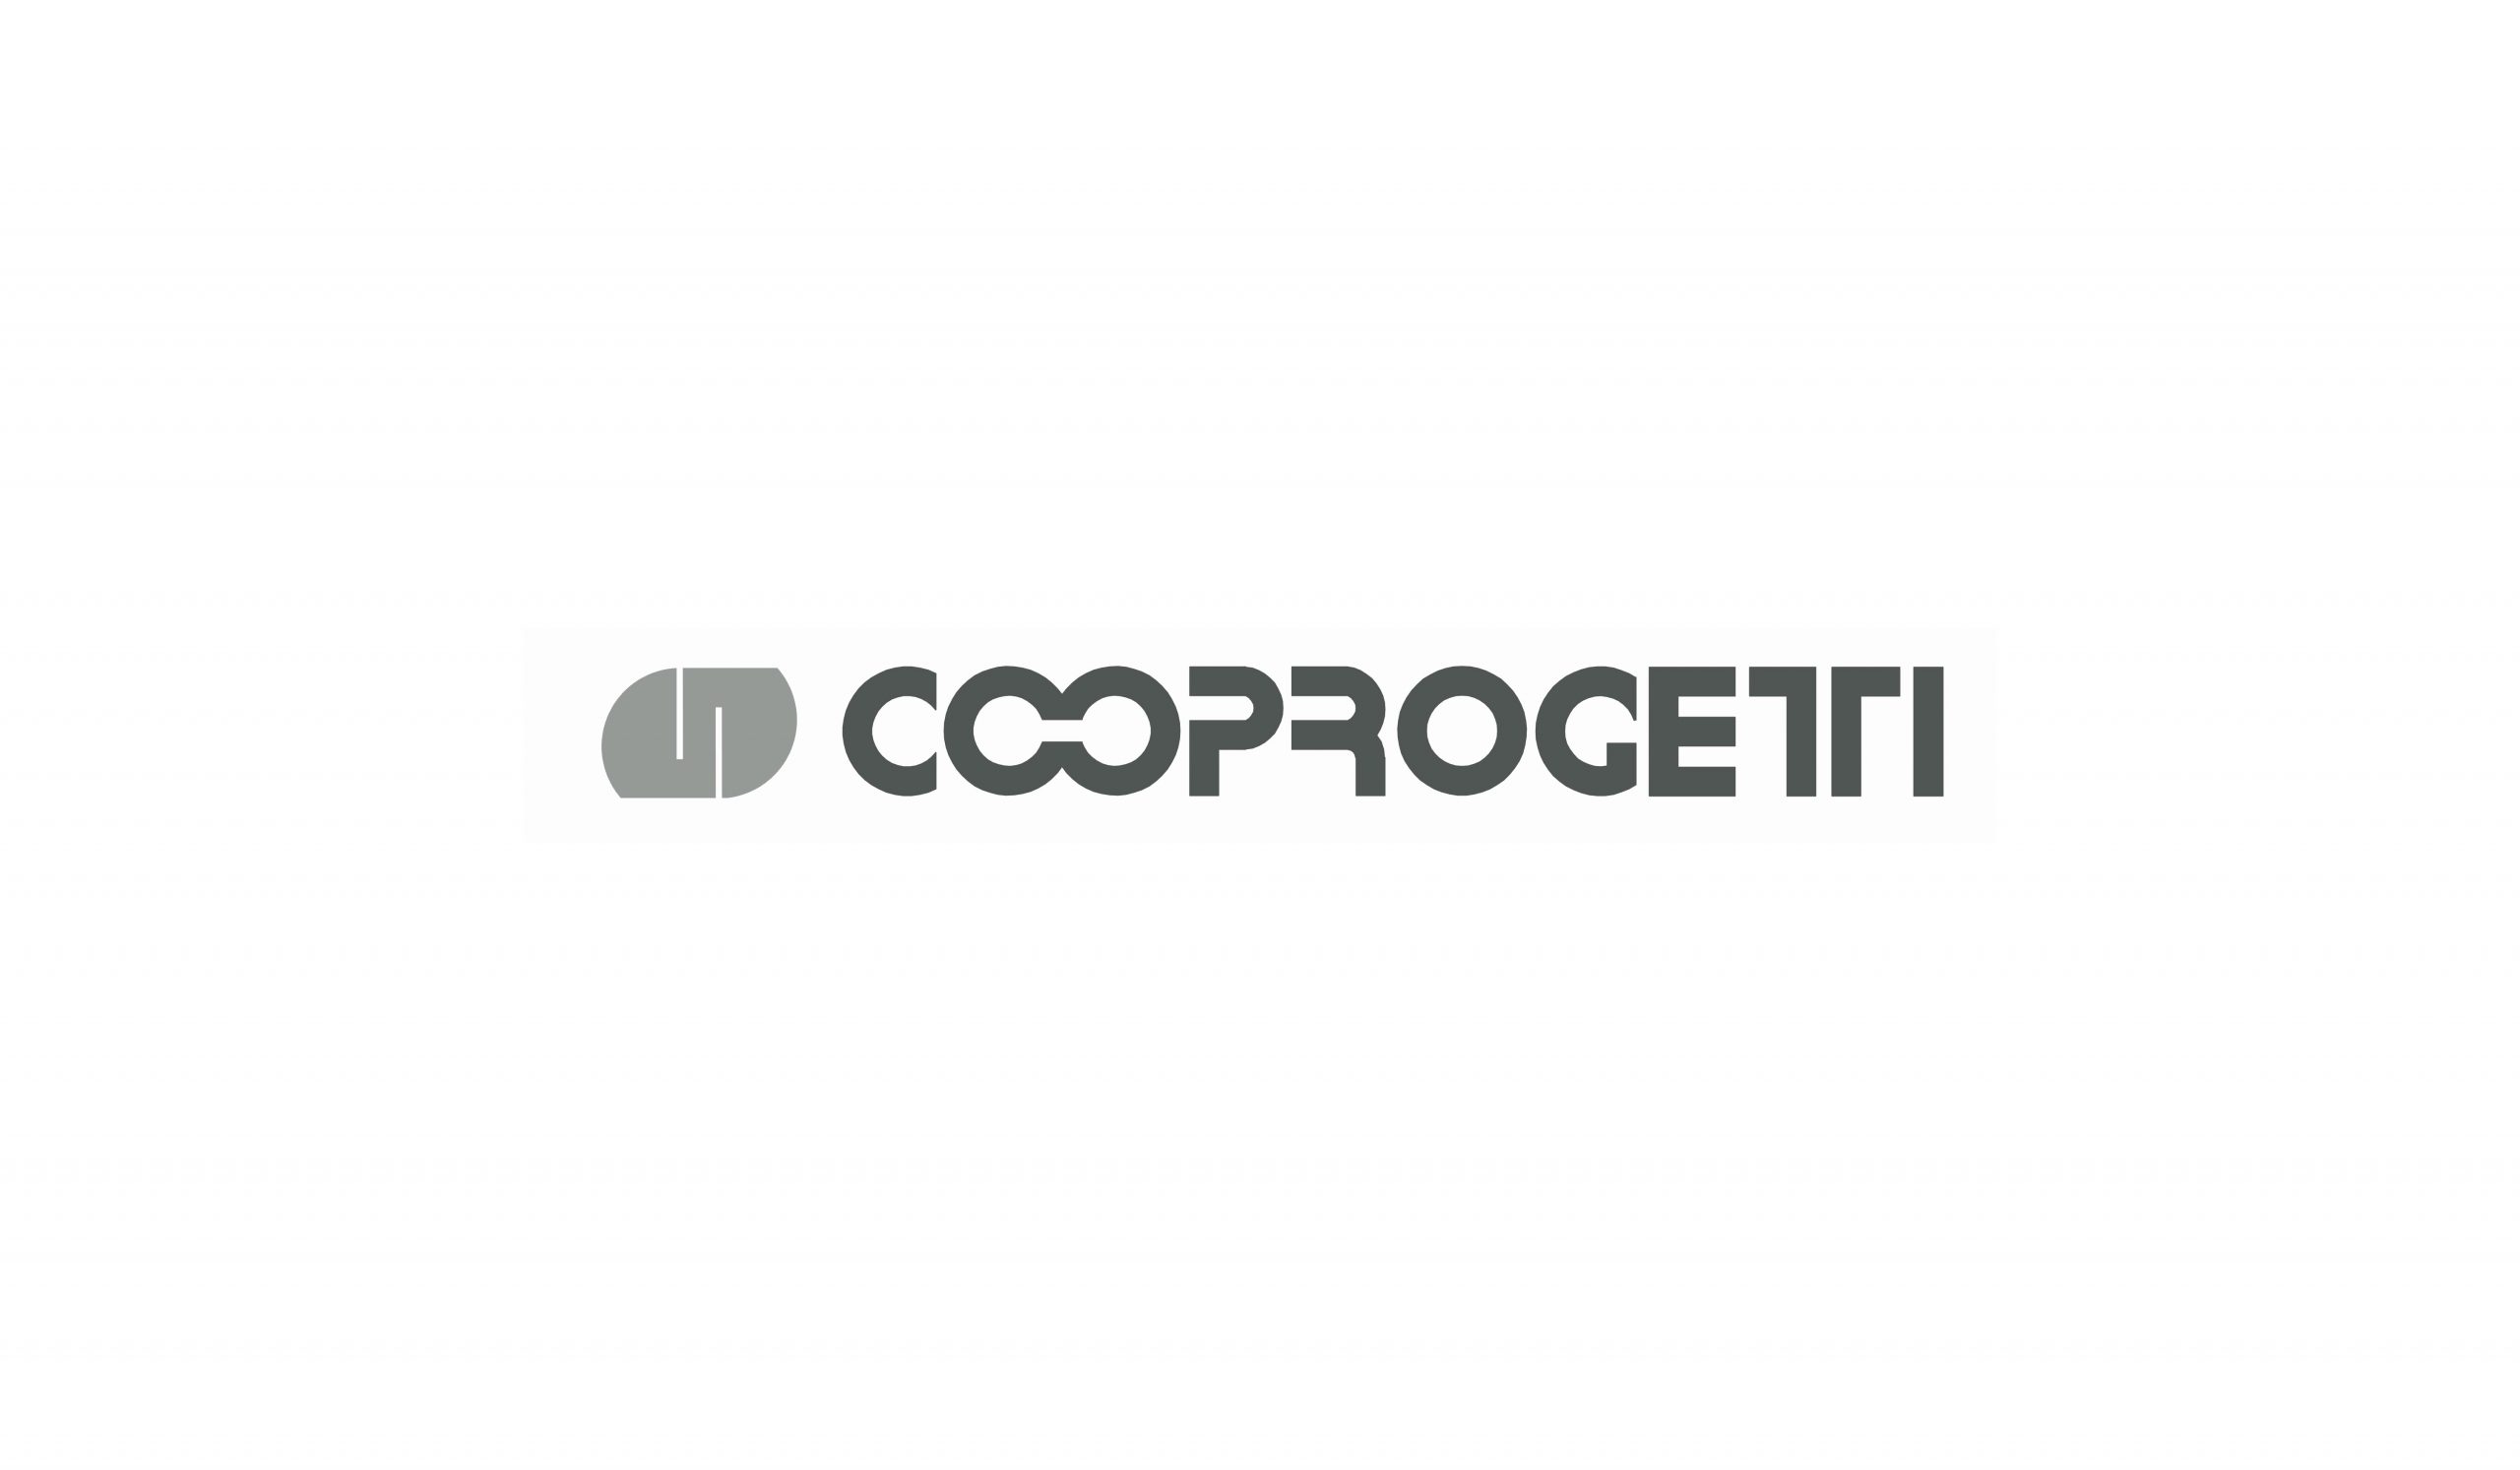 Cooprogetti